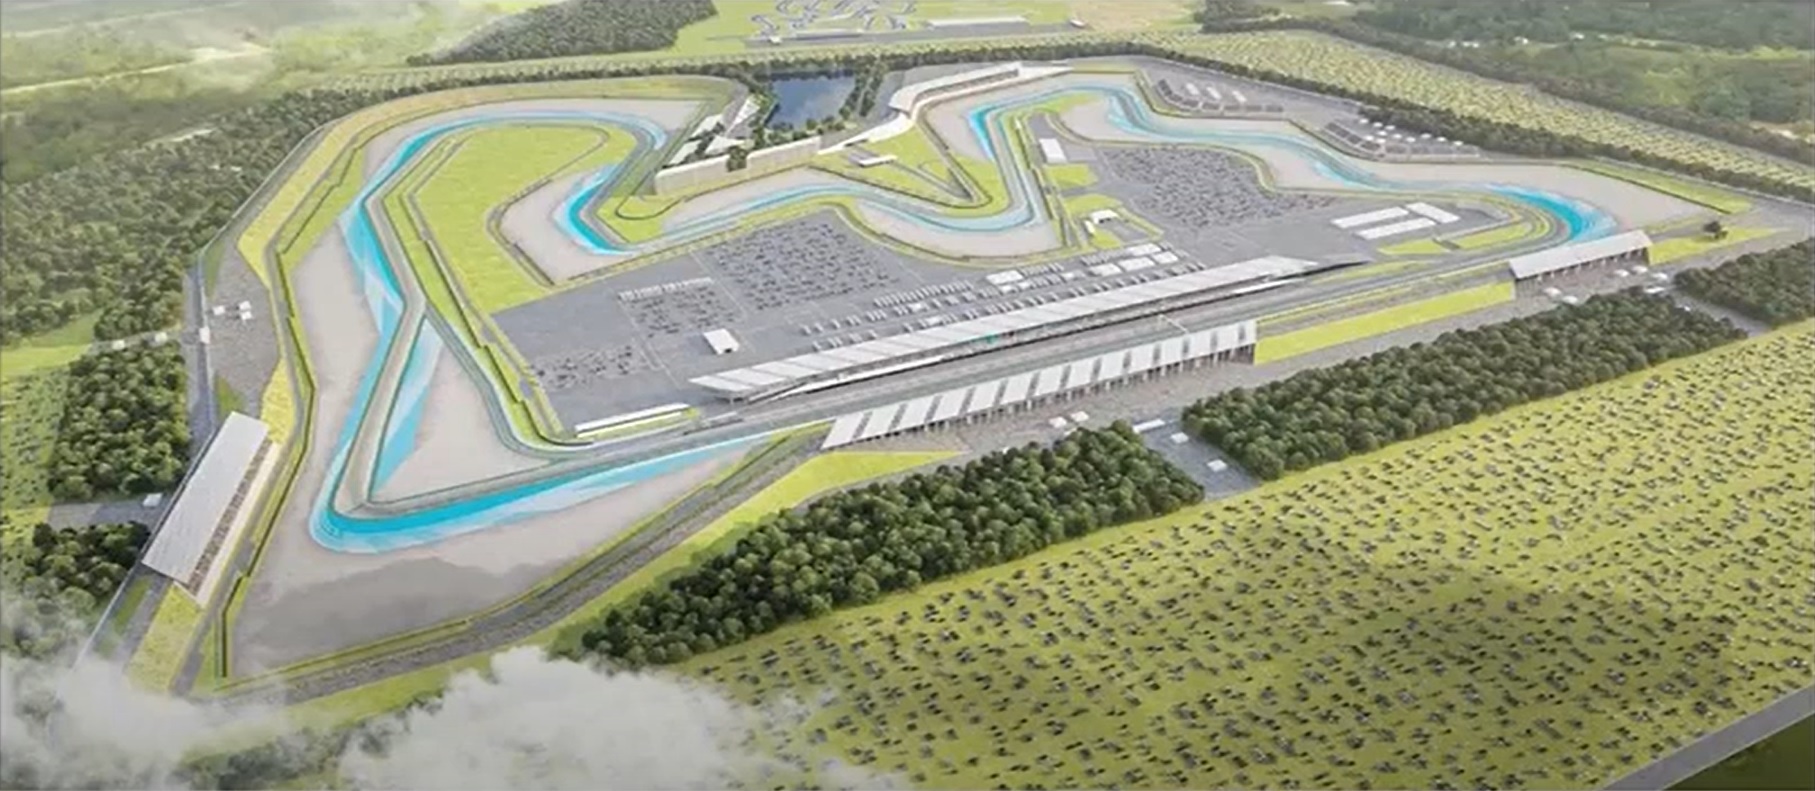 Haladékot kért a kormány a hajdúnánási motorversenypálya építésére